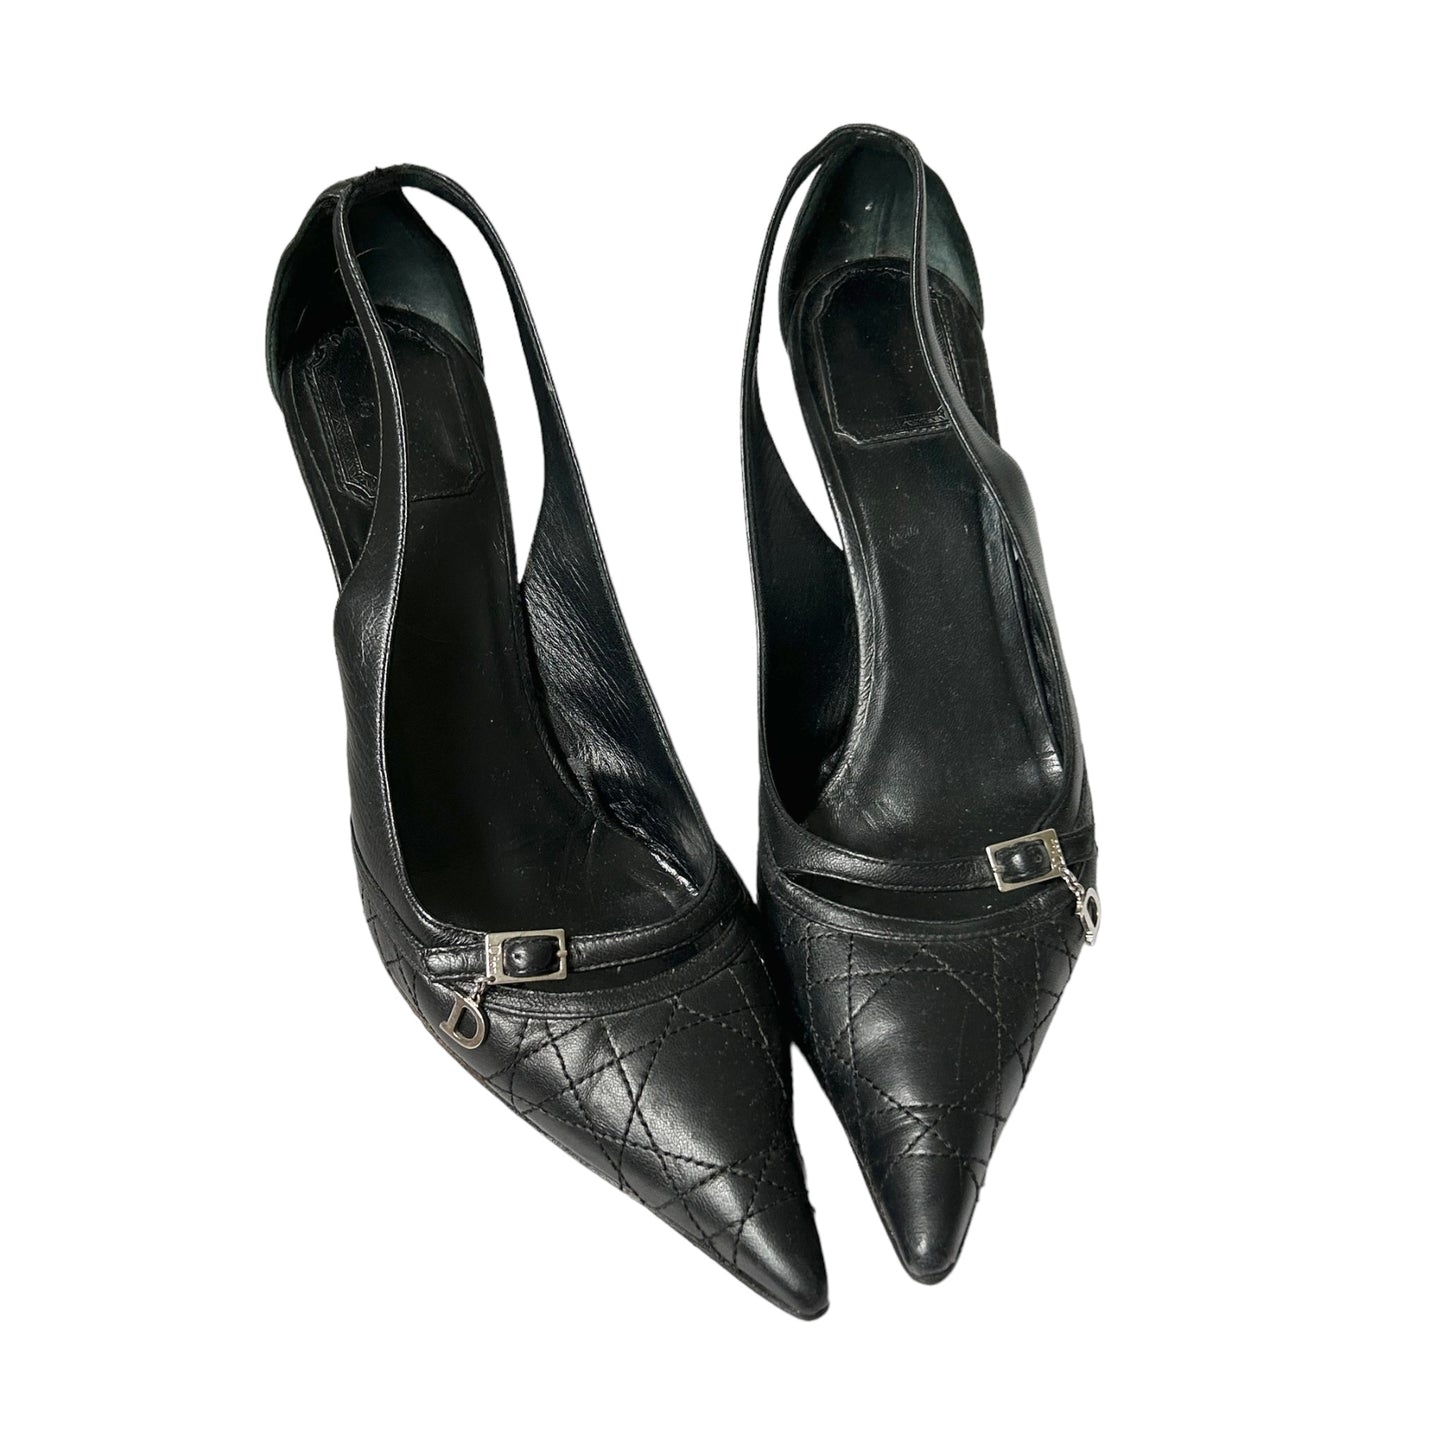 Vintage Dior black leather pumps